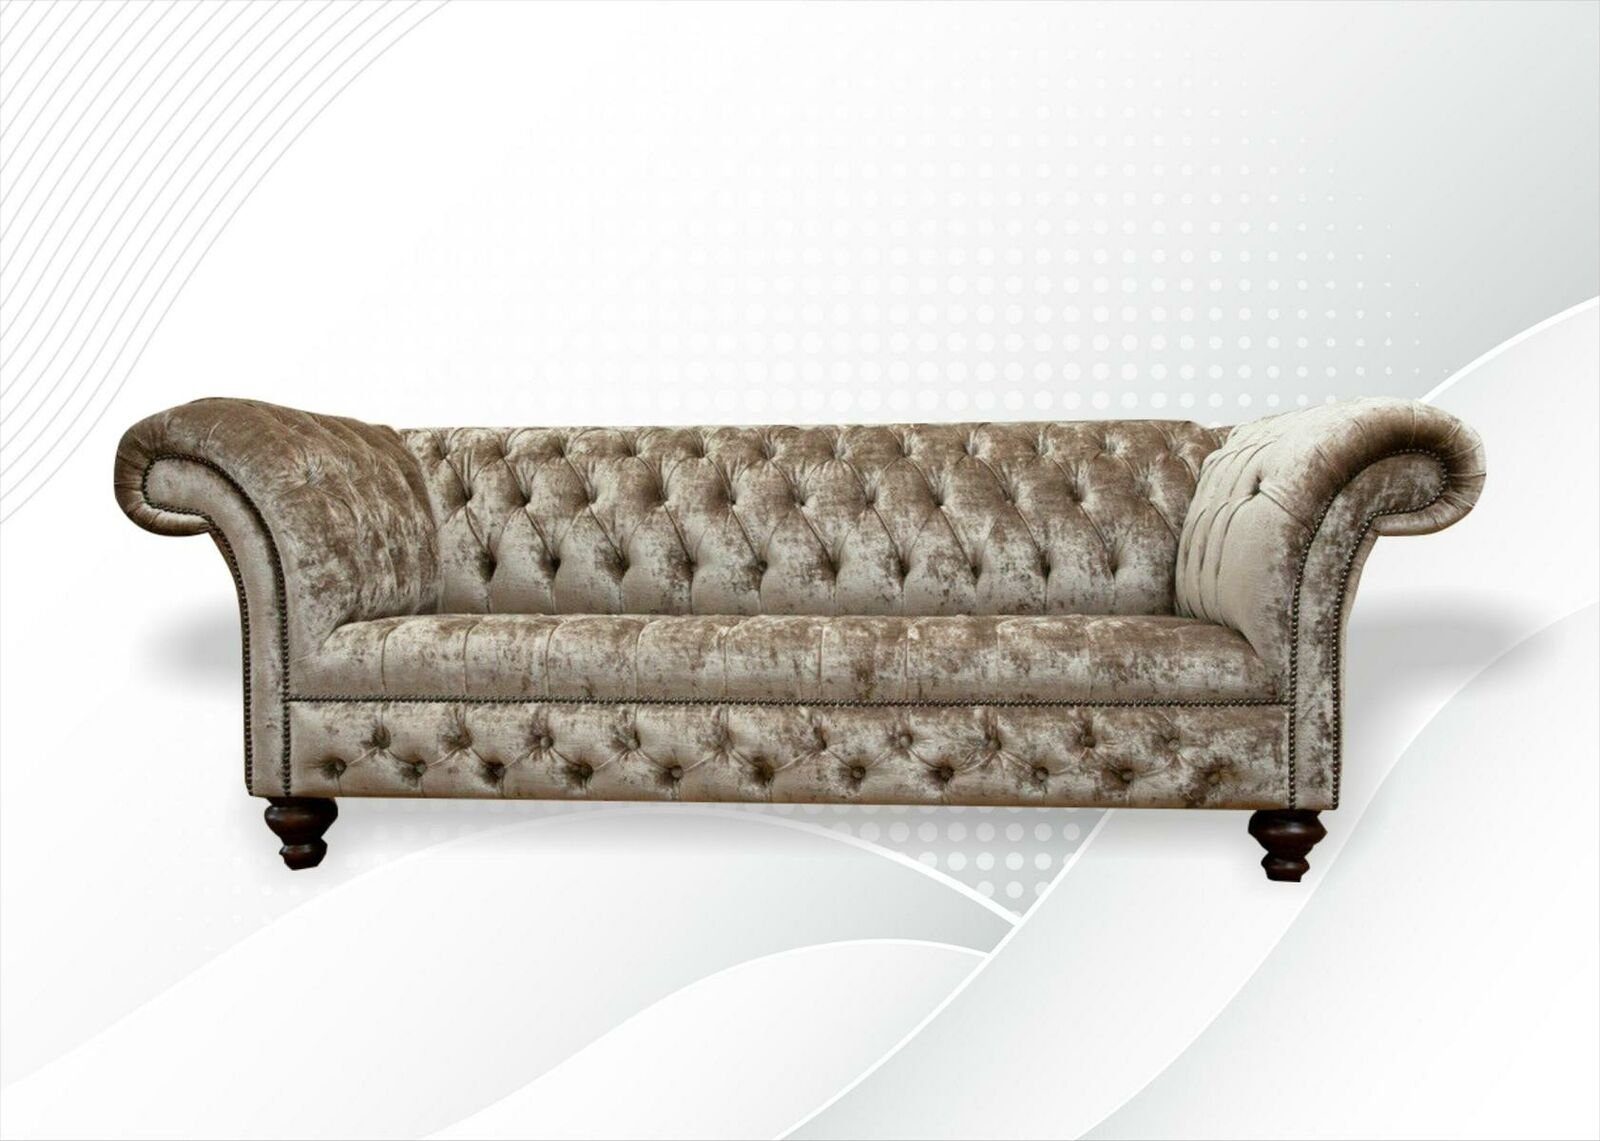 [Beliebtes Qualitätsprodukt!] JVmoebel Chesterfield-Sofa Nerz Farbe in luxus Neu, 3-er Europe 3-Sitzer Möbel Made Chesterfield Modern